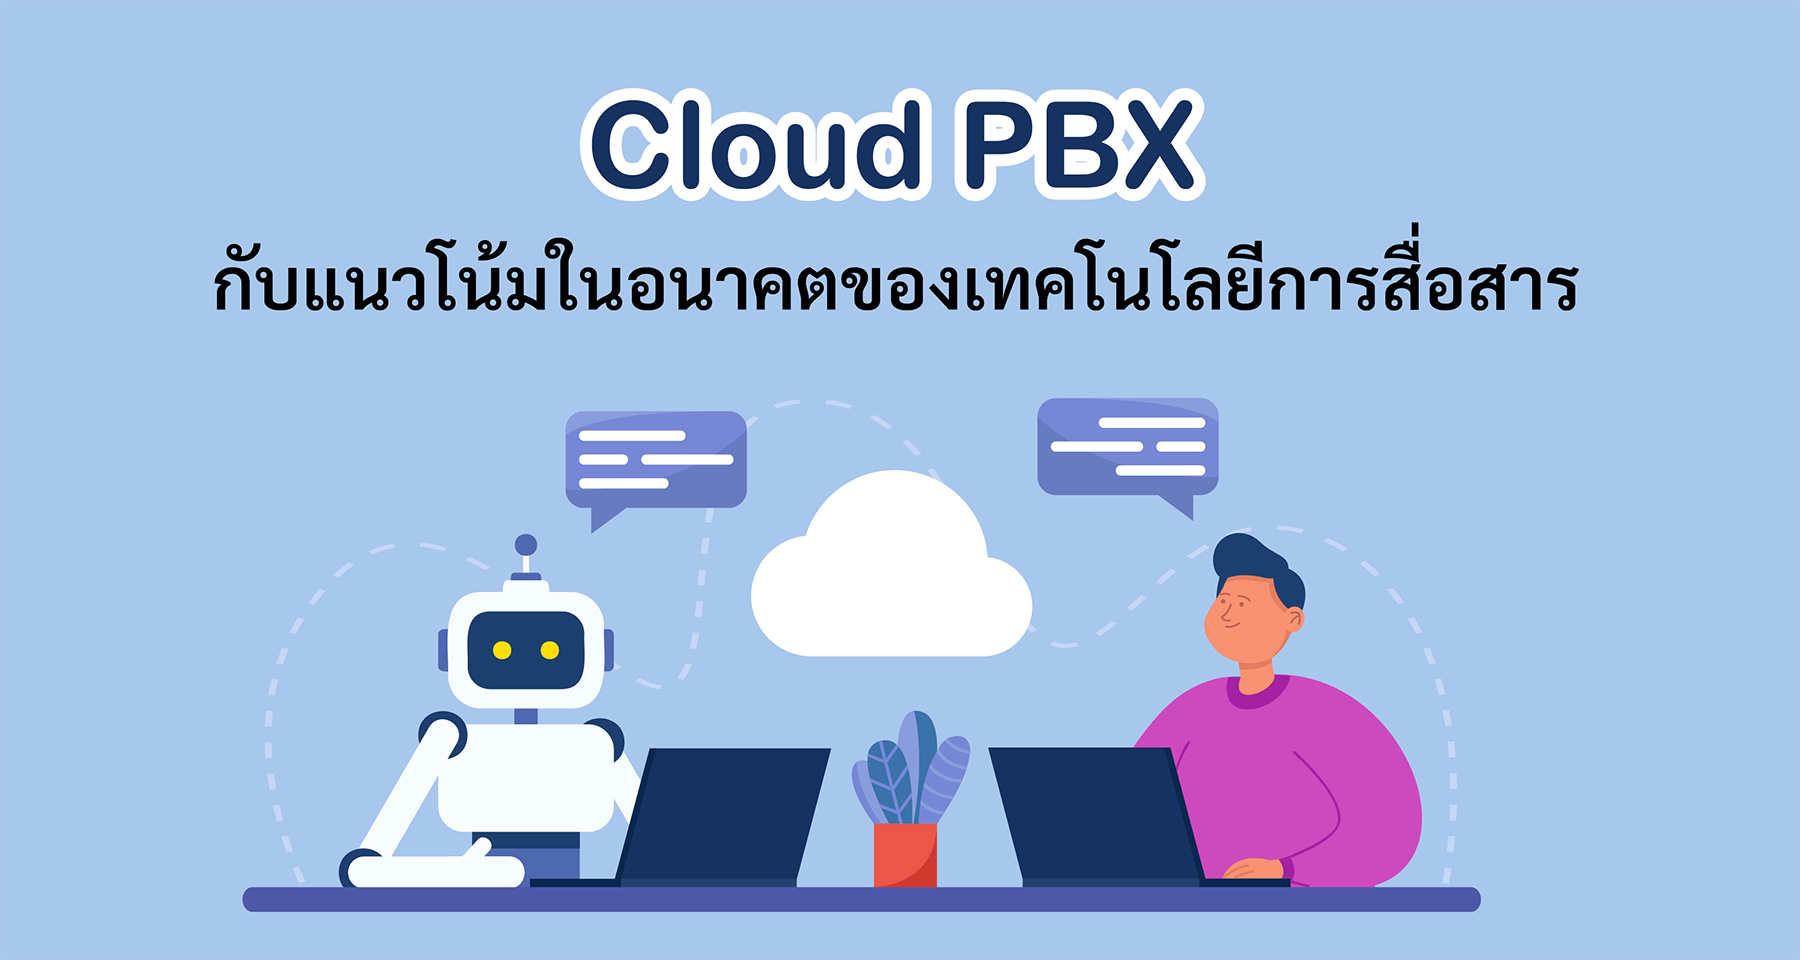 Cloud PBX กับแนวโน้มในอนาคตของเทคโนโลยีการสื่อสาร